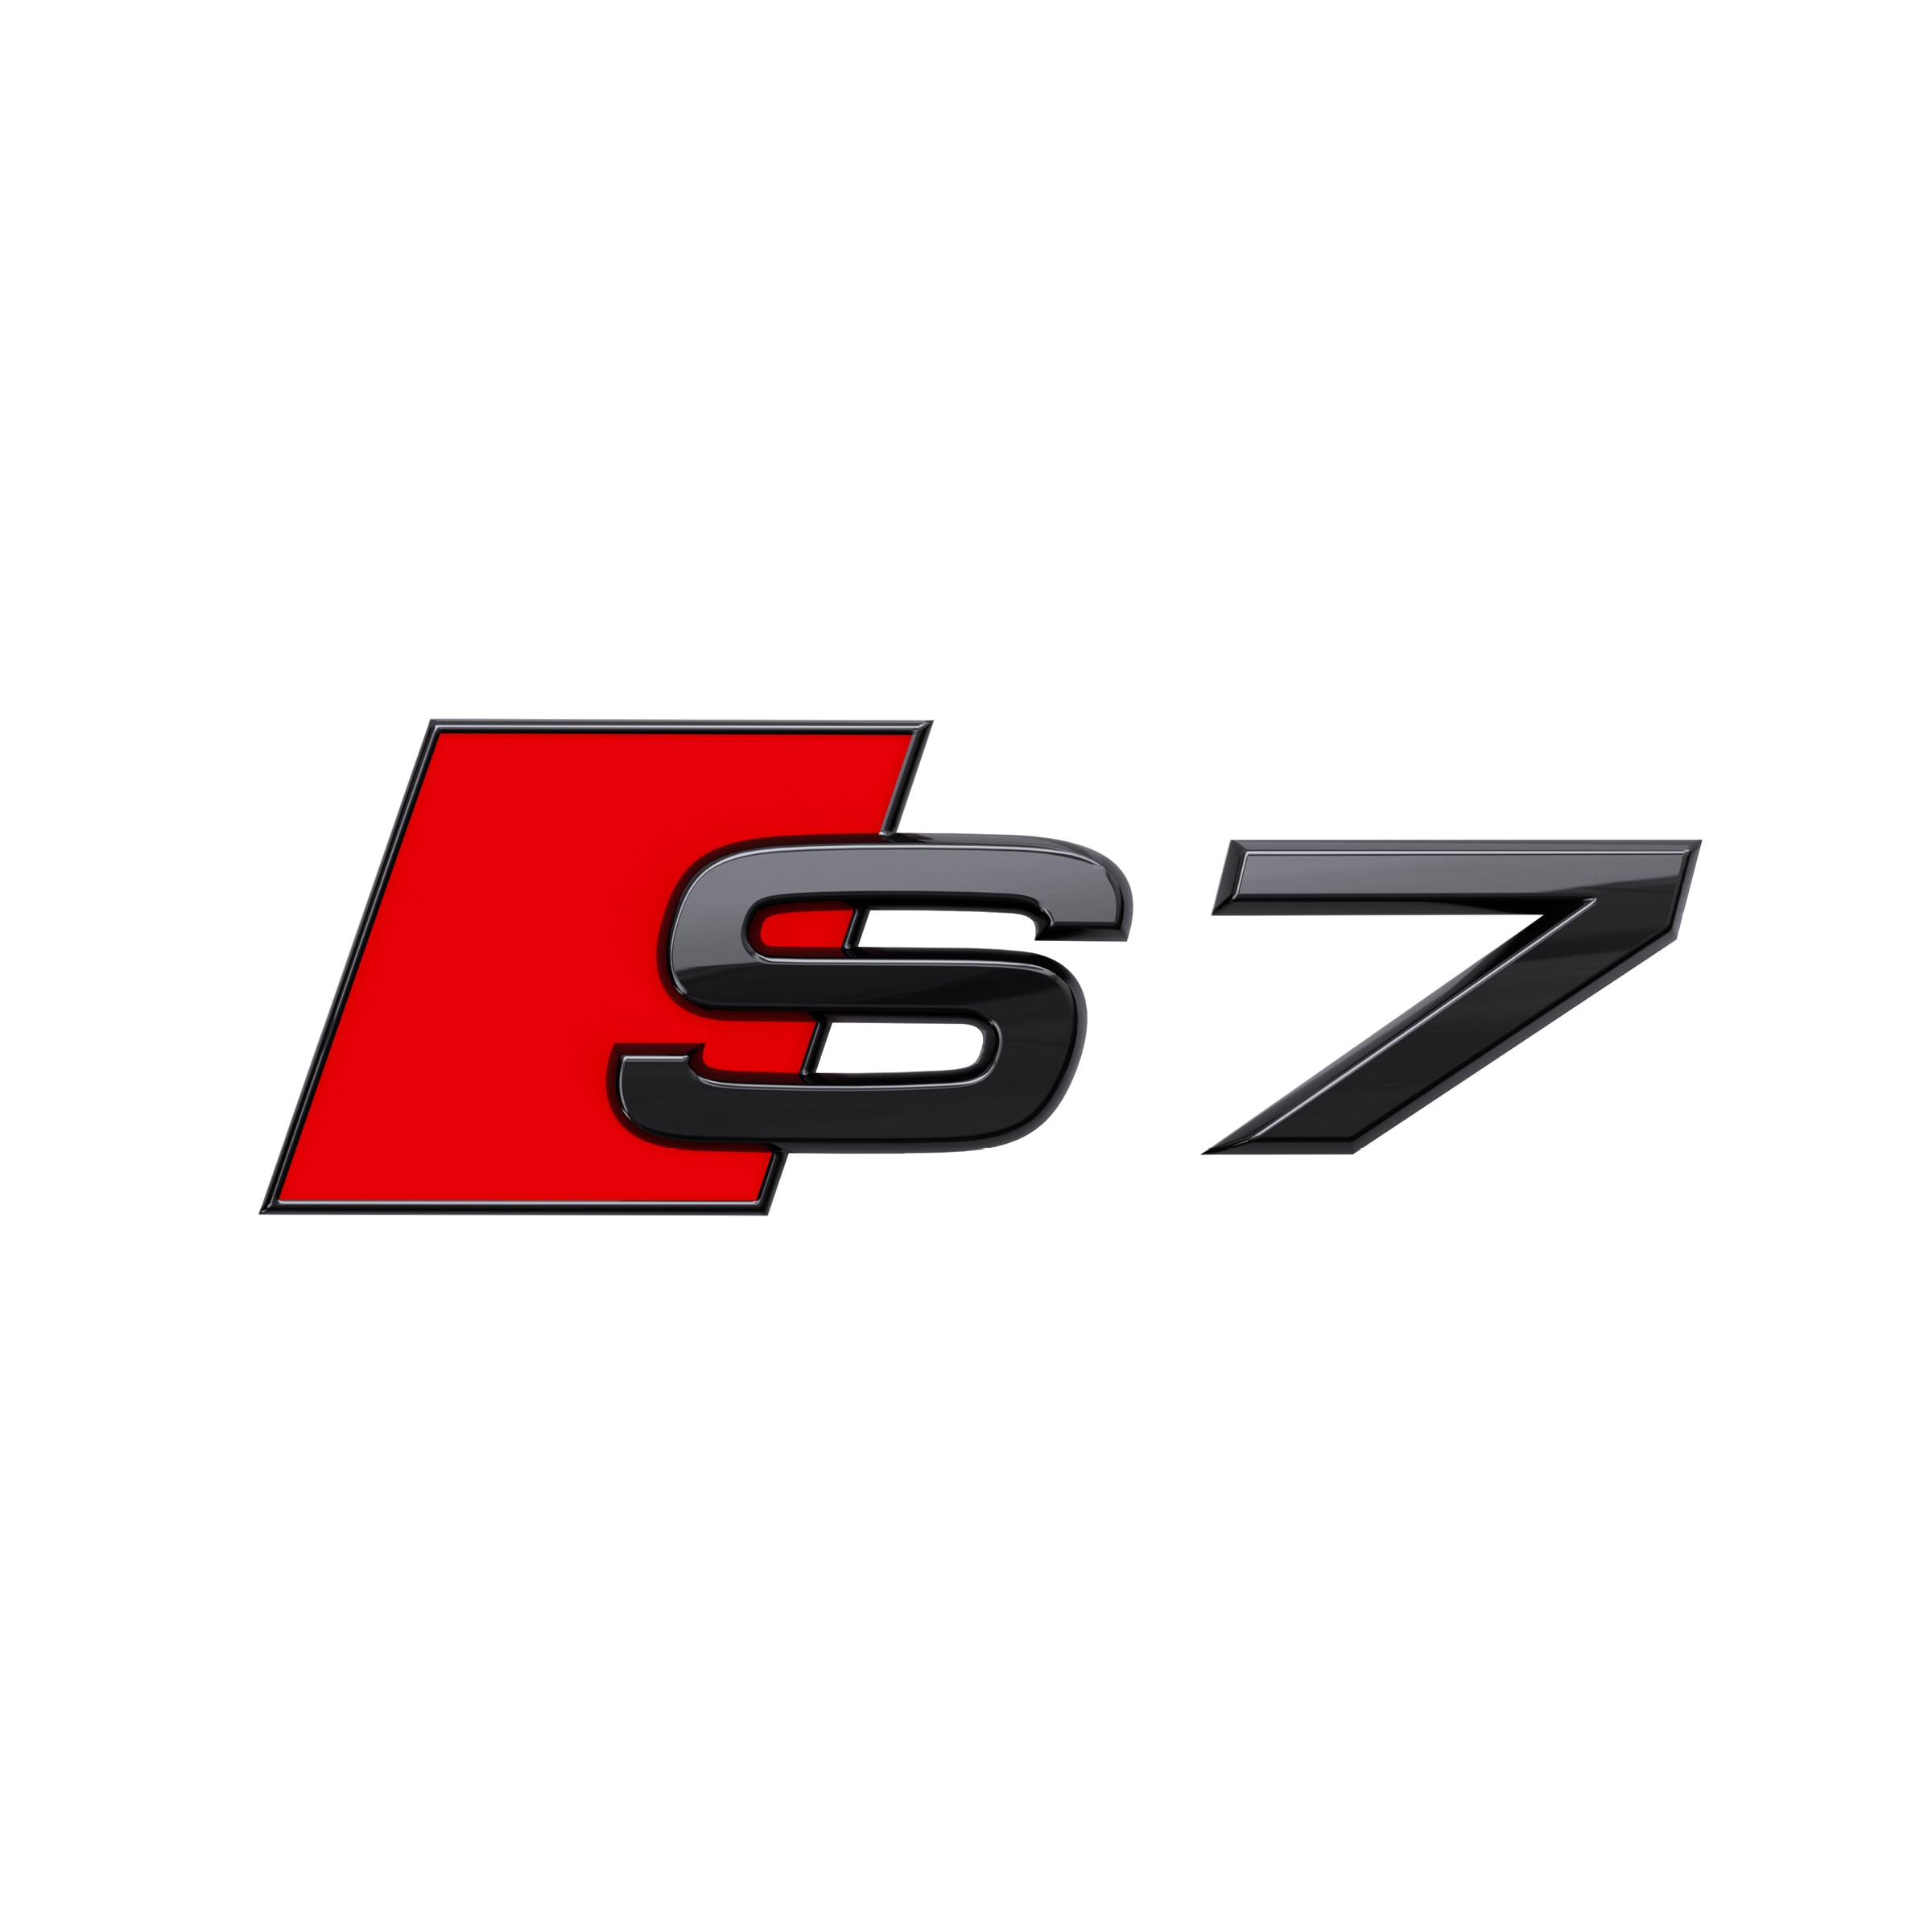 Modellbezeichnung S7 in Schwarz